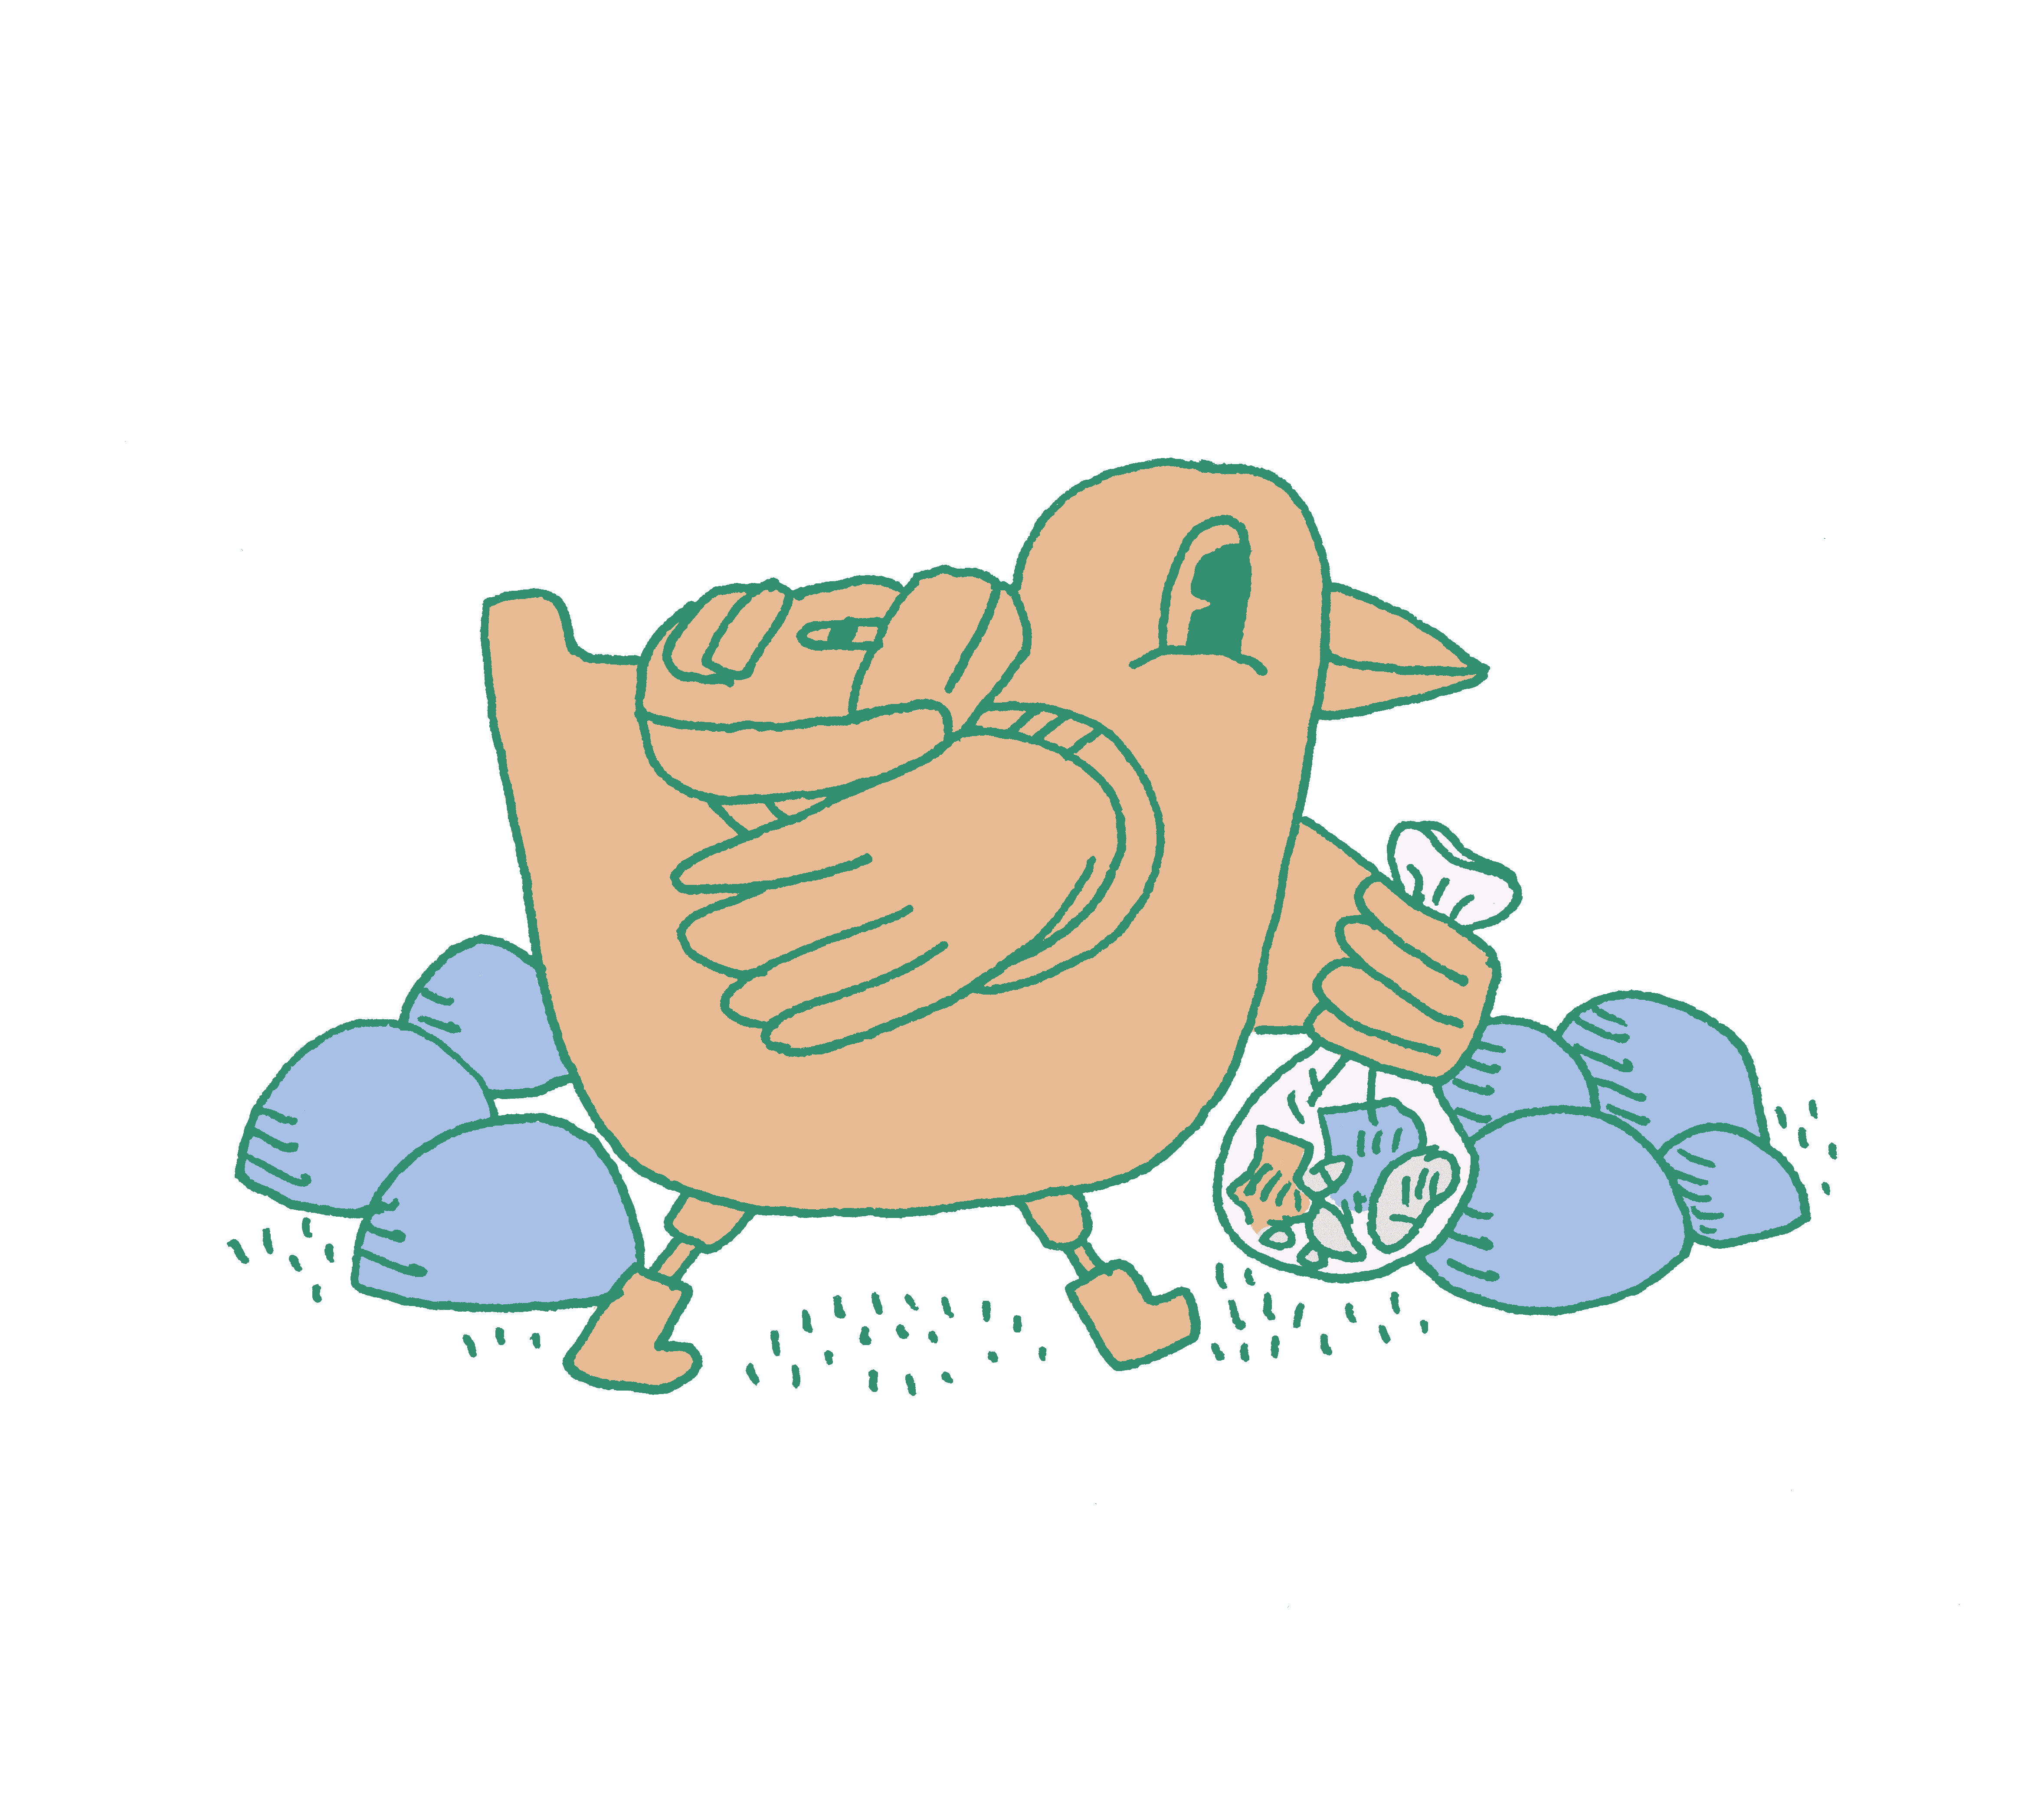 Piirros, jossa Kokko-Lokki kantaa roskapussia kivisessä maastossa reppu selässään.